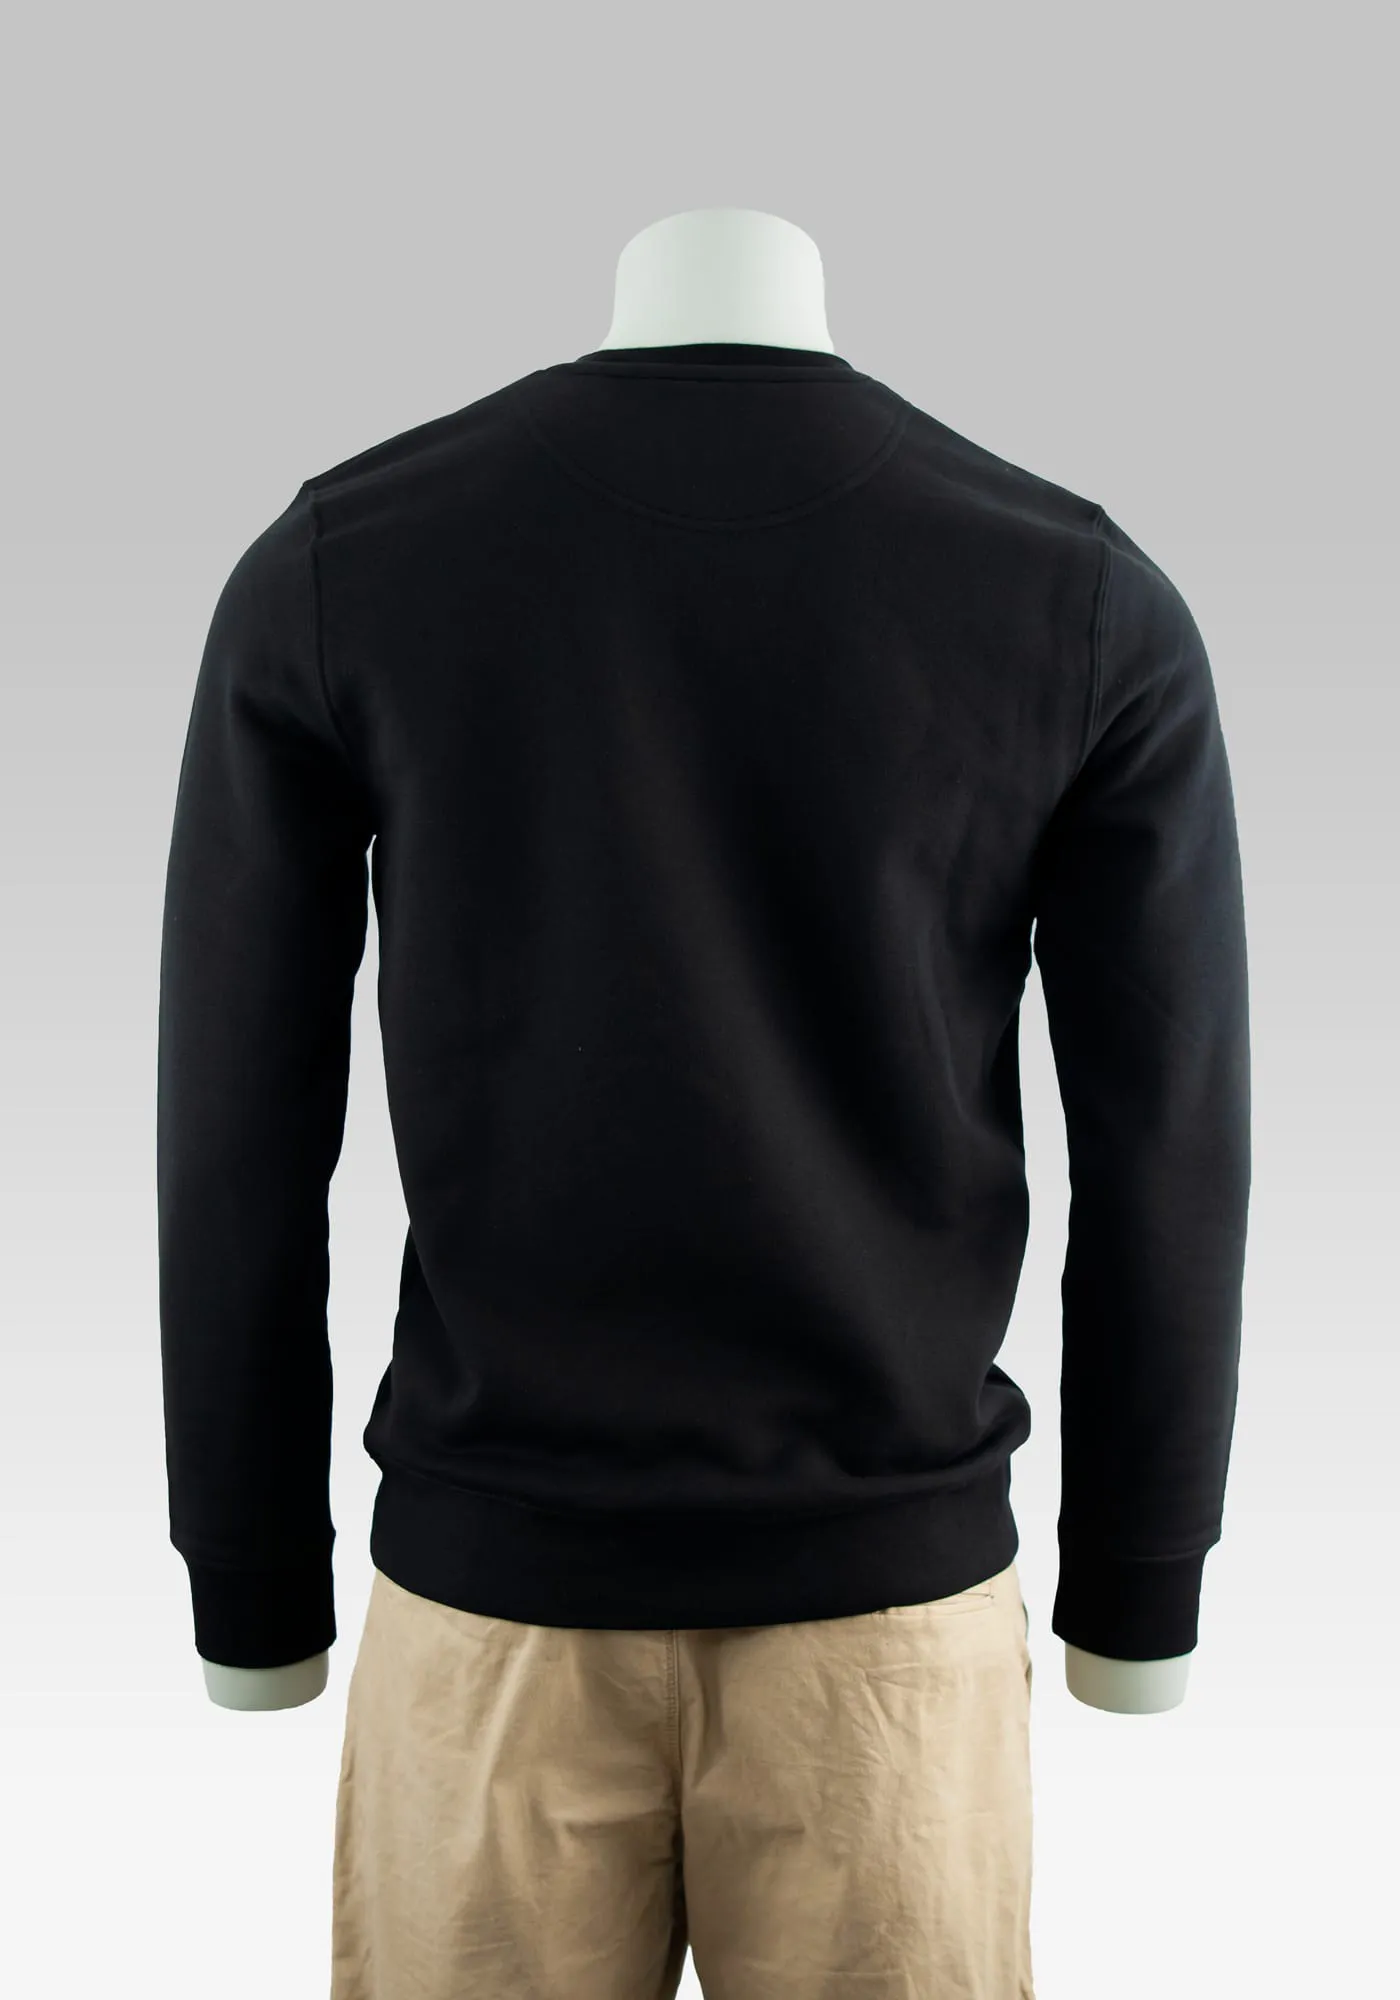 Sweater Hitman auf der Hollowpuppe in Farbe schwarz in Rückansicht